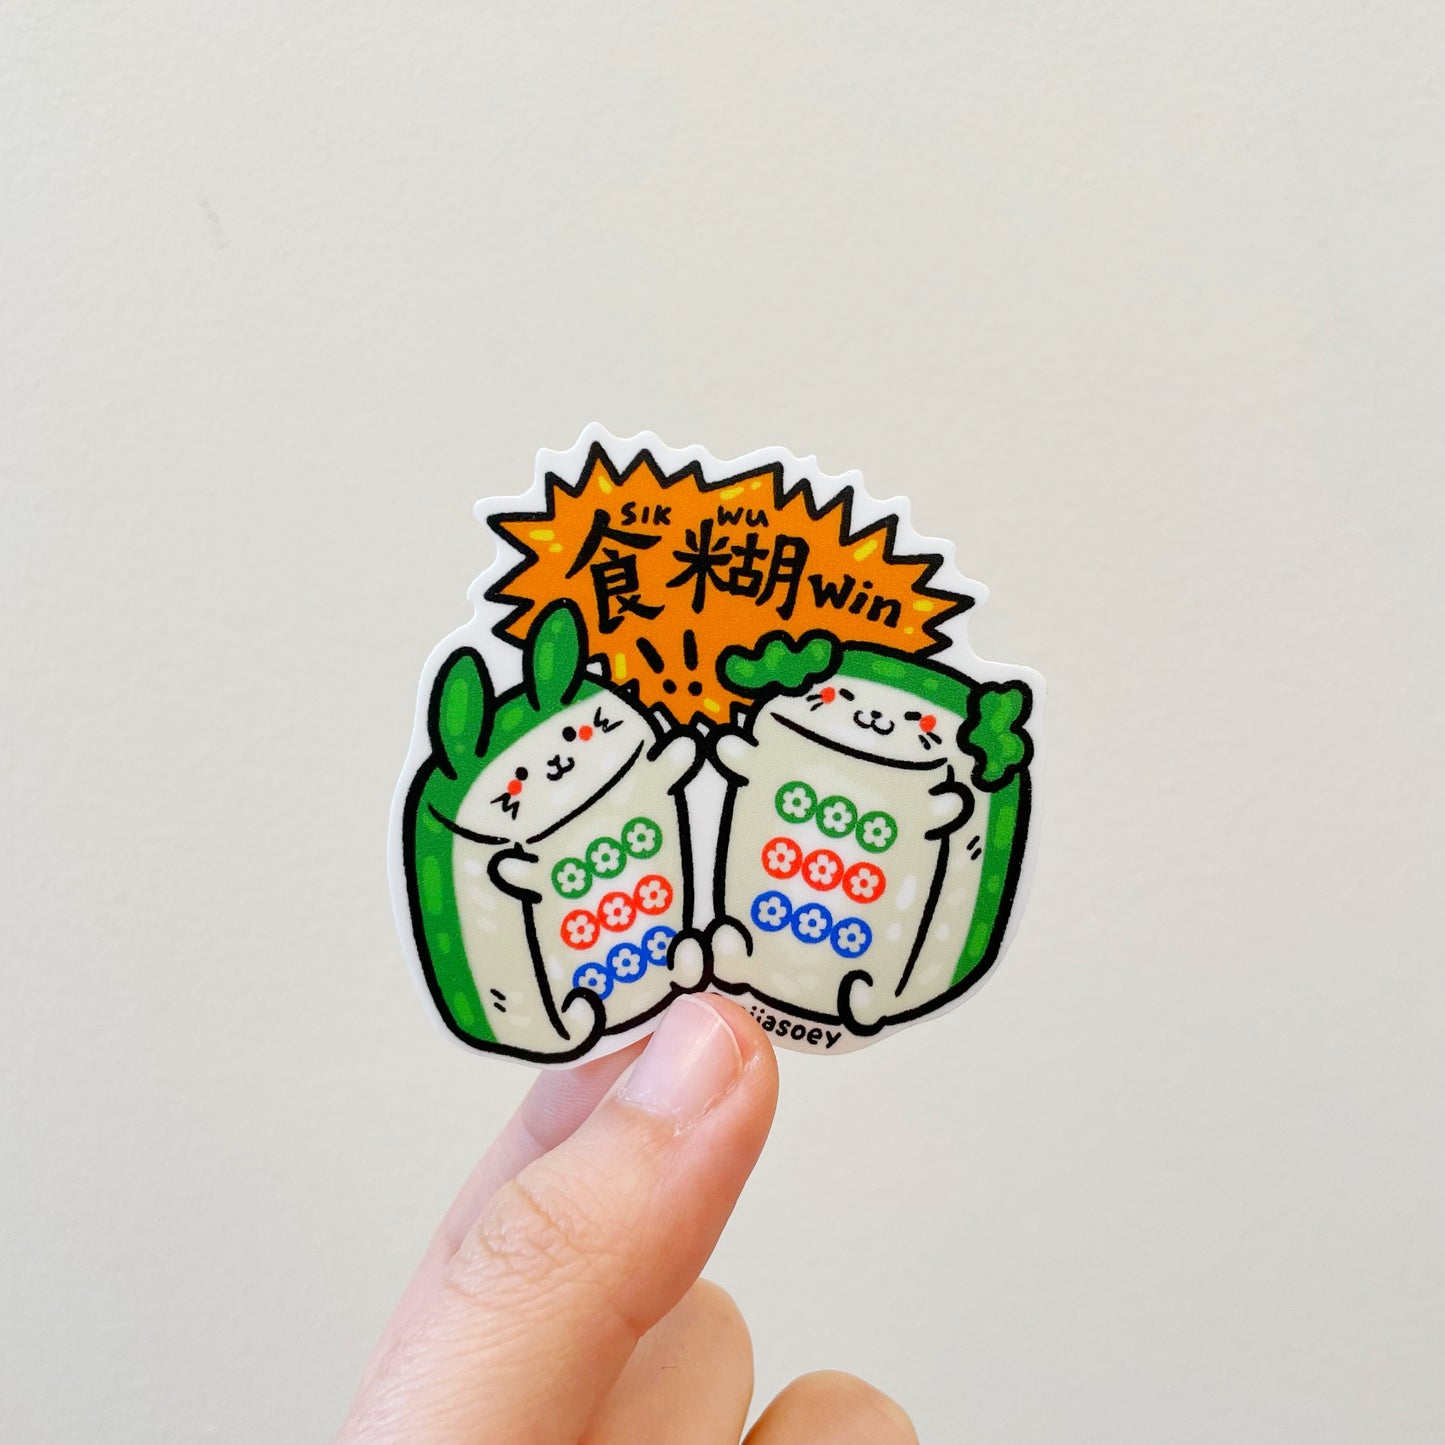 miiasoey: Mahjong Stickers